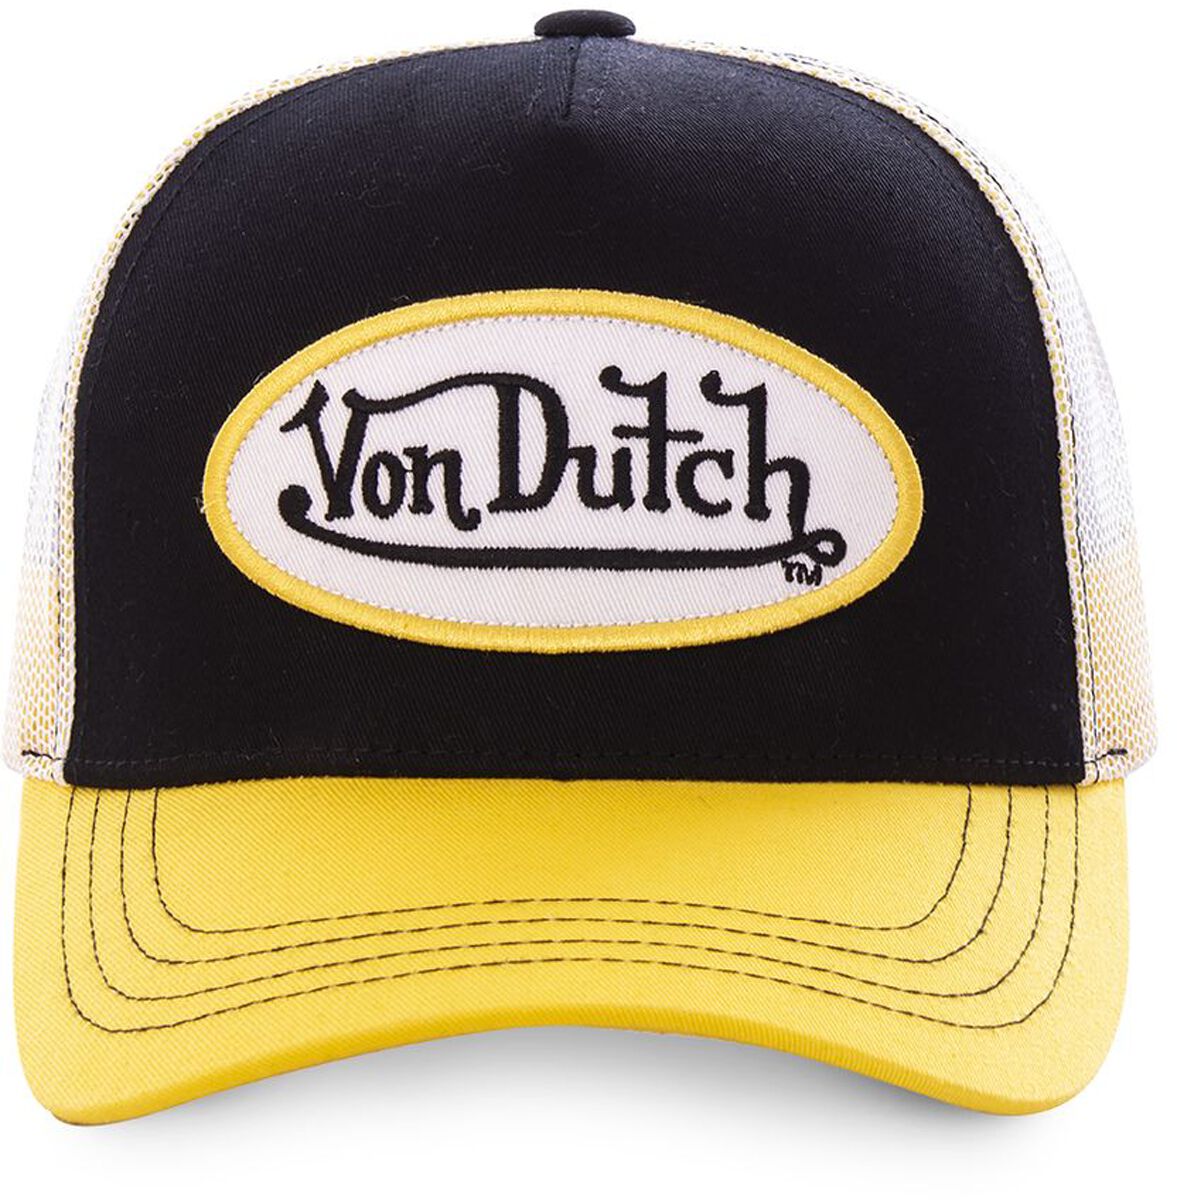 Von Dutch CASQUETTE VON DUTCH, BASEBALL AVEC FILET Cap schwarz gelb